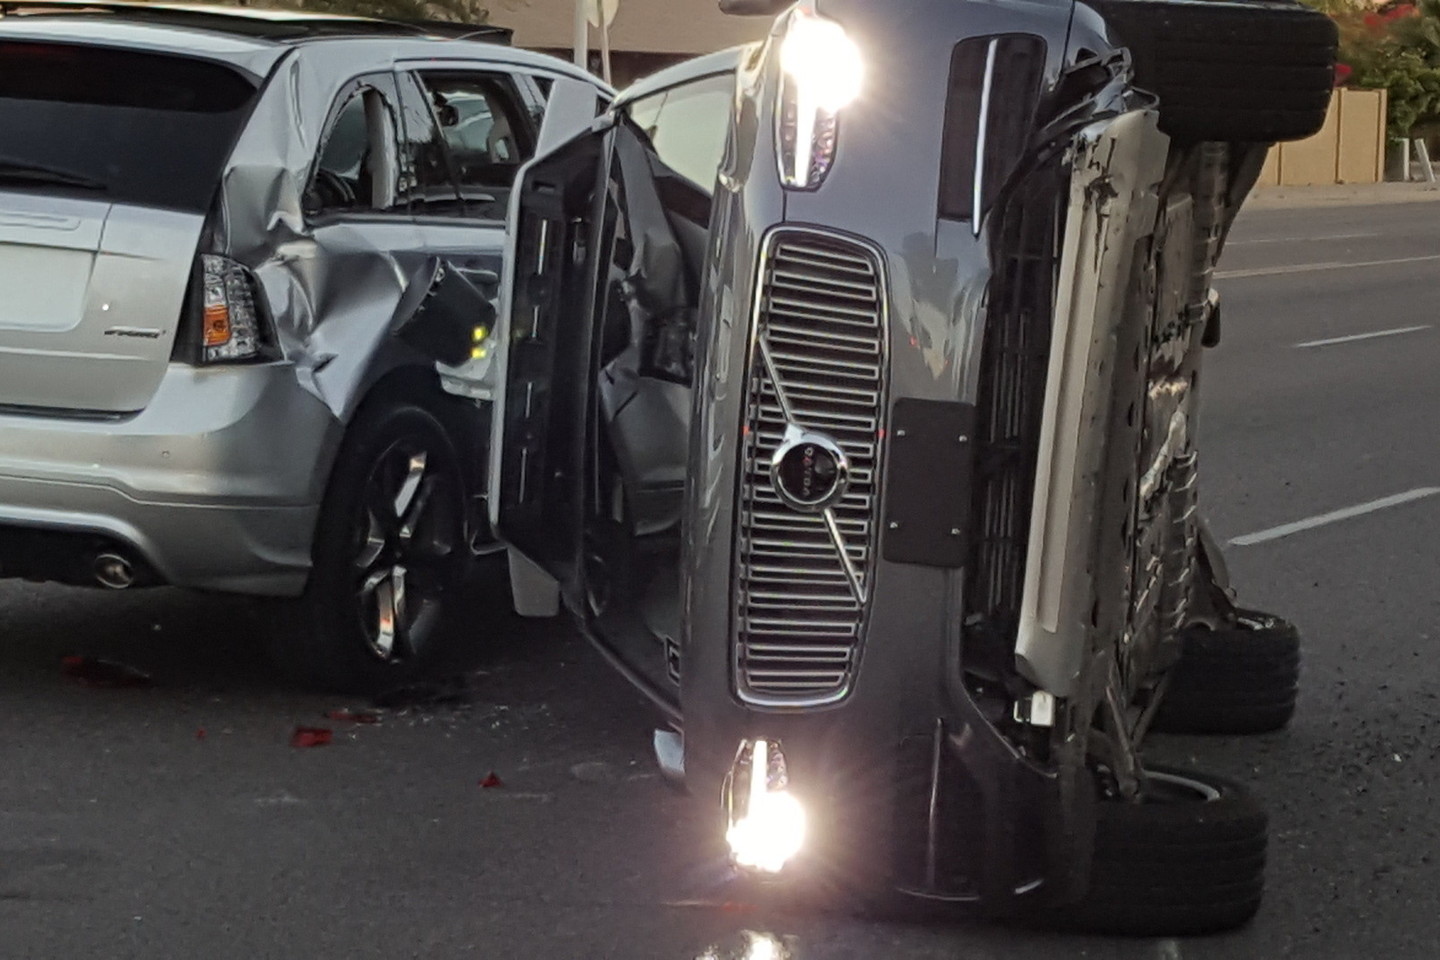 Po to, kai kovo 24 d. Arizonoje, Tempės mieste, kompiuteriu valdomas „Uber“ bepilotis automobilis „Volvo XC90“ pateko į rimtą avariją, kompanija paskelbė pristabdanti tokių automobilių bandymus.<br>FRESCO NEWS/Mark Beach/Scanpix